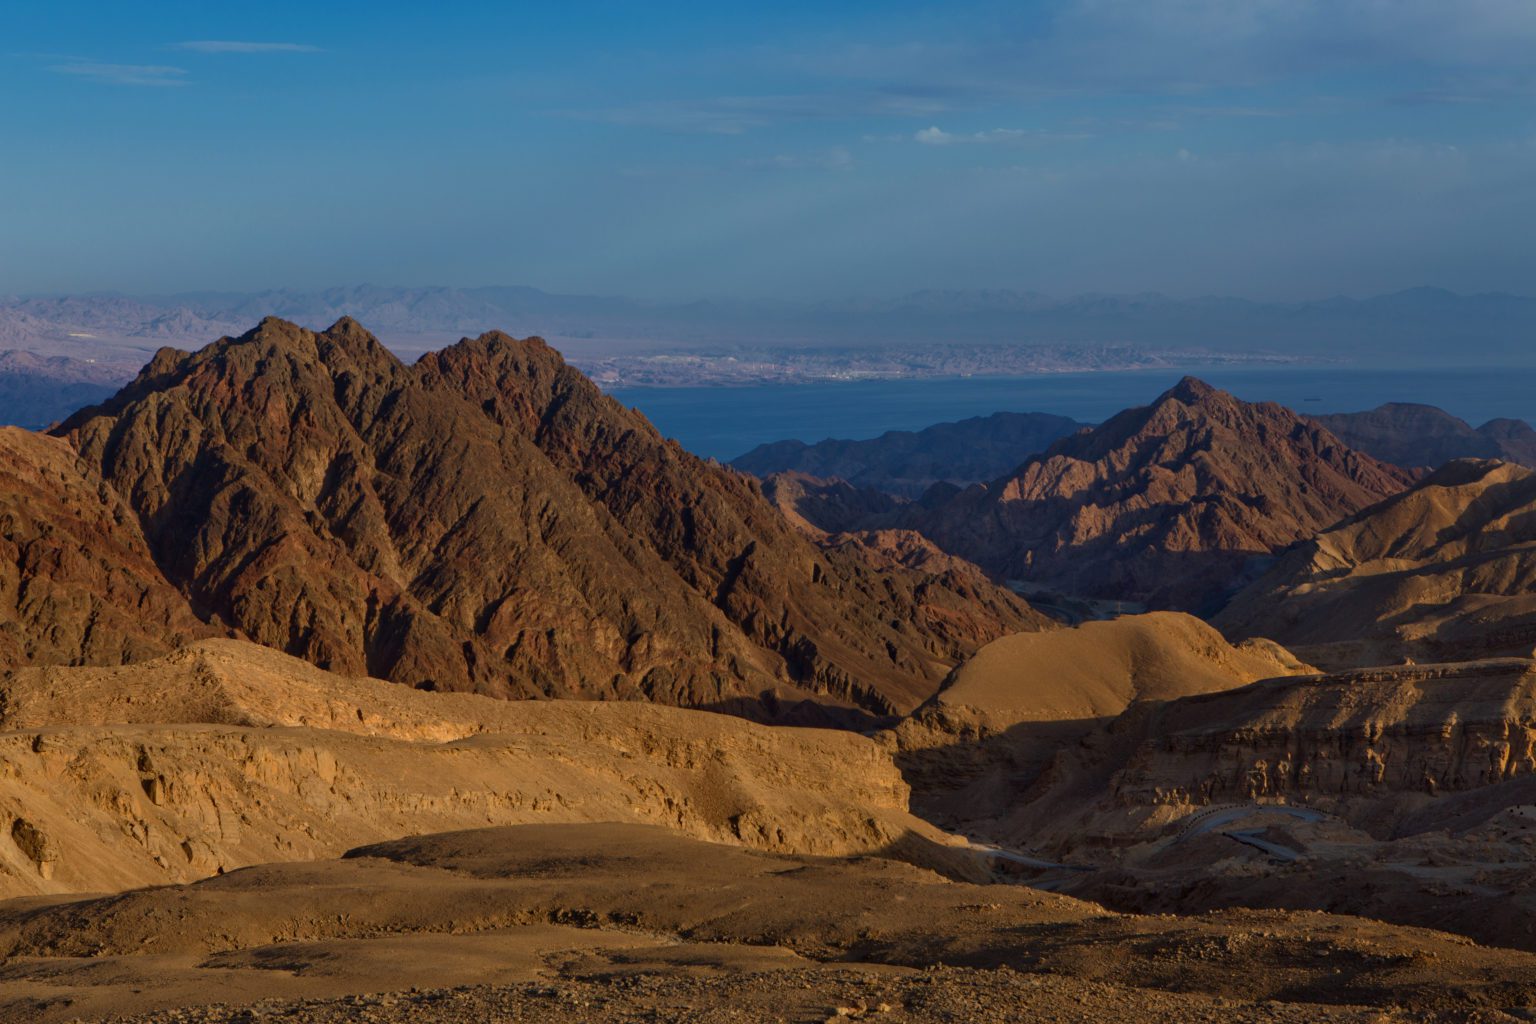 Negev Desert and mountains near Eilat